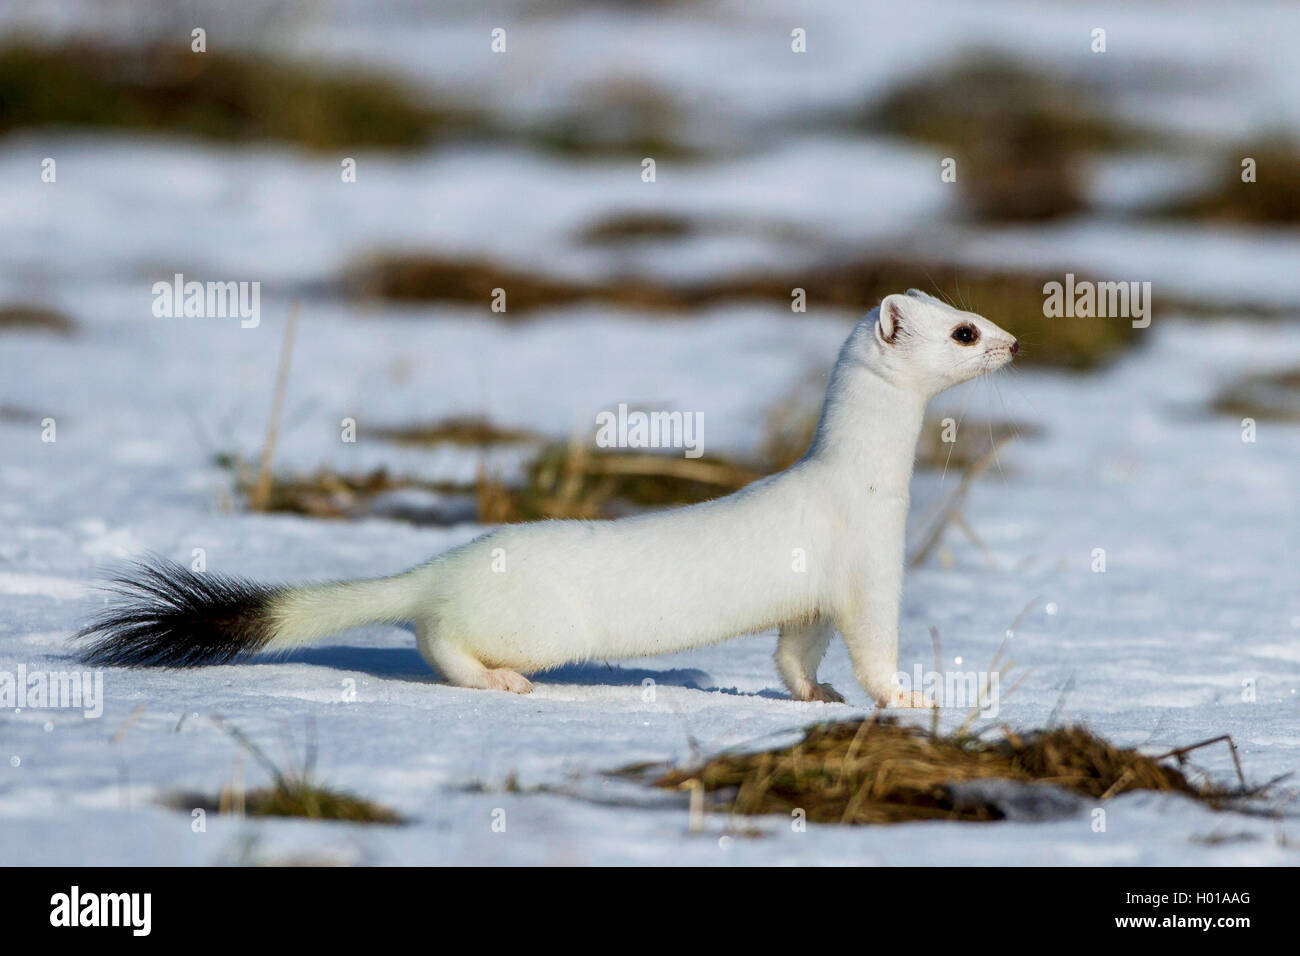 Ermellino, ermellino, corto-tailed donnola (Mustela erminea), il peering ermellino in cappotto, vista laterale, Germania Foto Stock